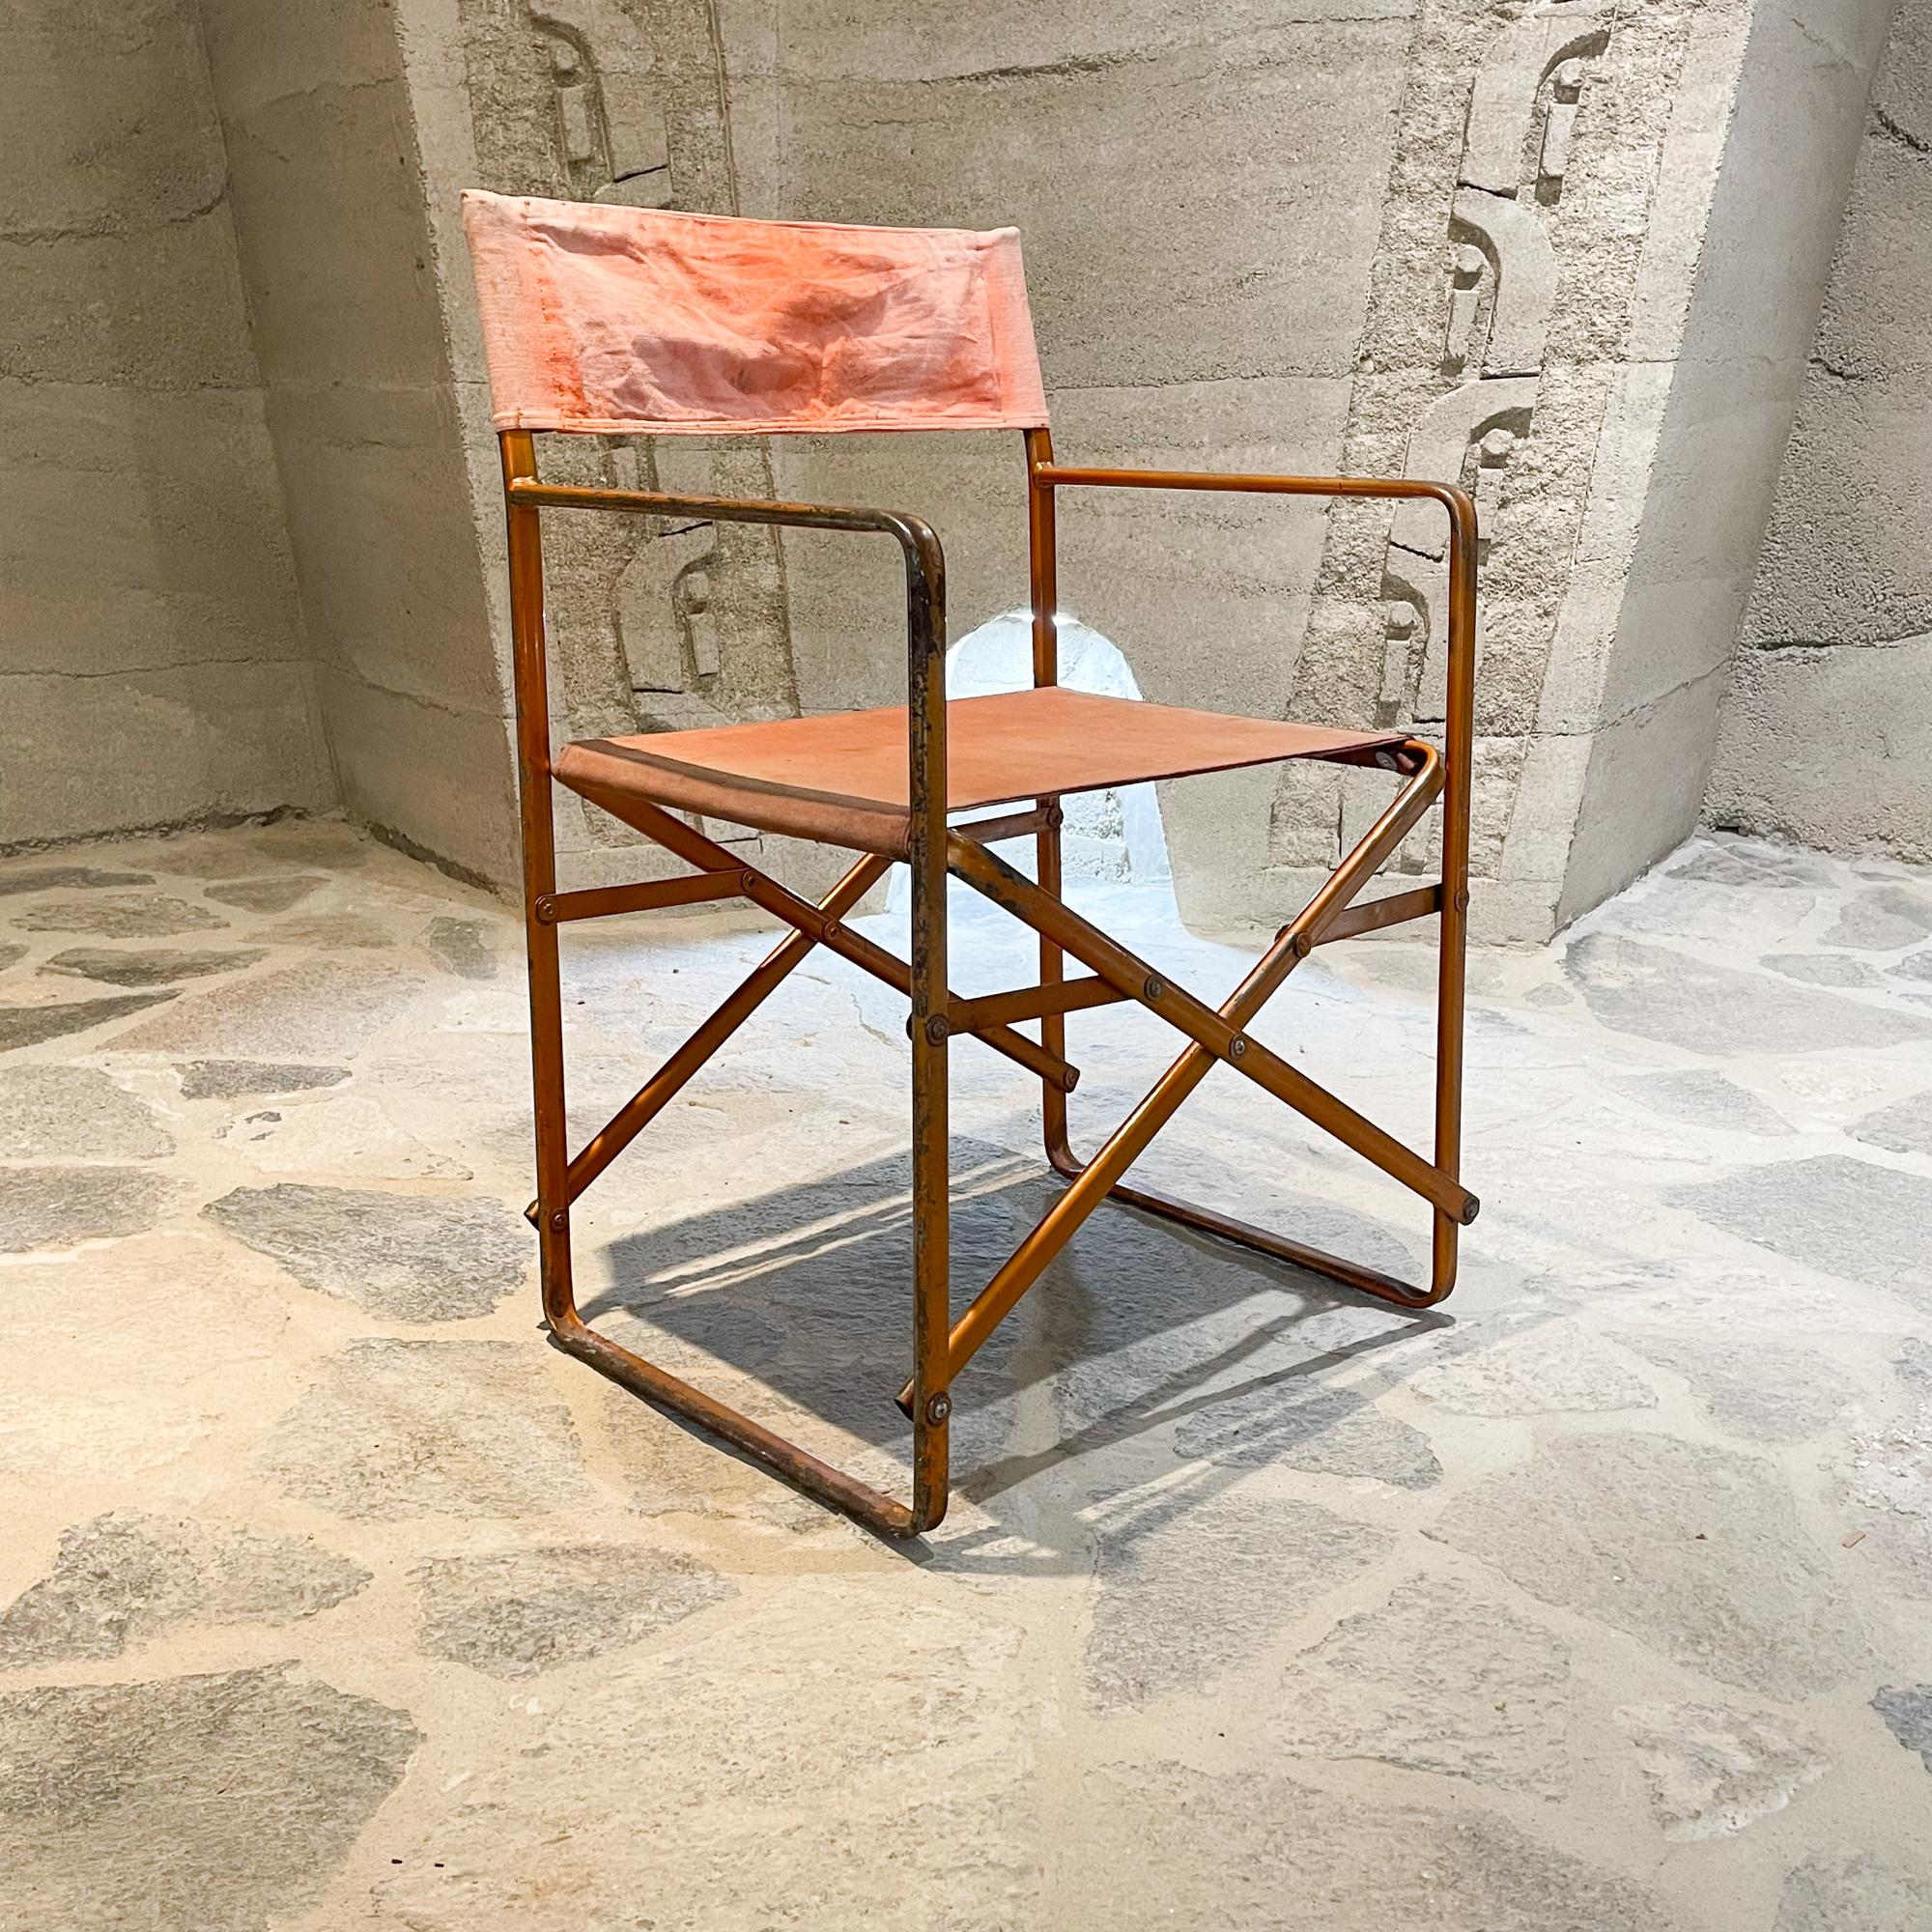 Director's Folding Chair Im Stil von Gae Aulenti und ihrem Klappstuhl Zanotta April 1964 Design, Italien.
Die vorherrschende Farbe ist orange-rostig. Unmarkiertes Stück. Kein Herstelleretikett vorhanden. Hergestellt aus Metall und